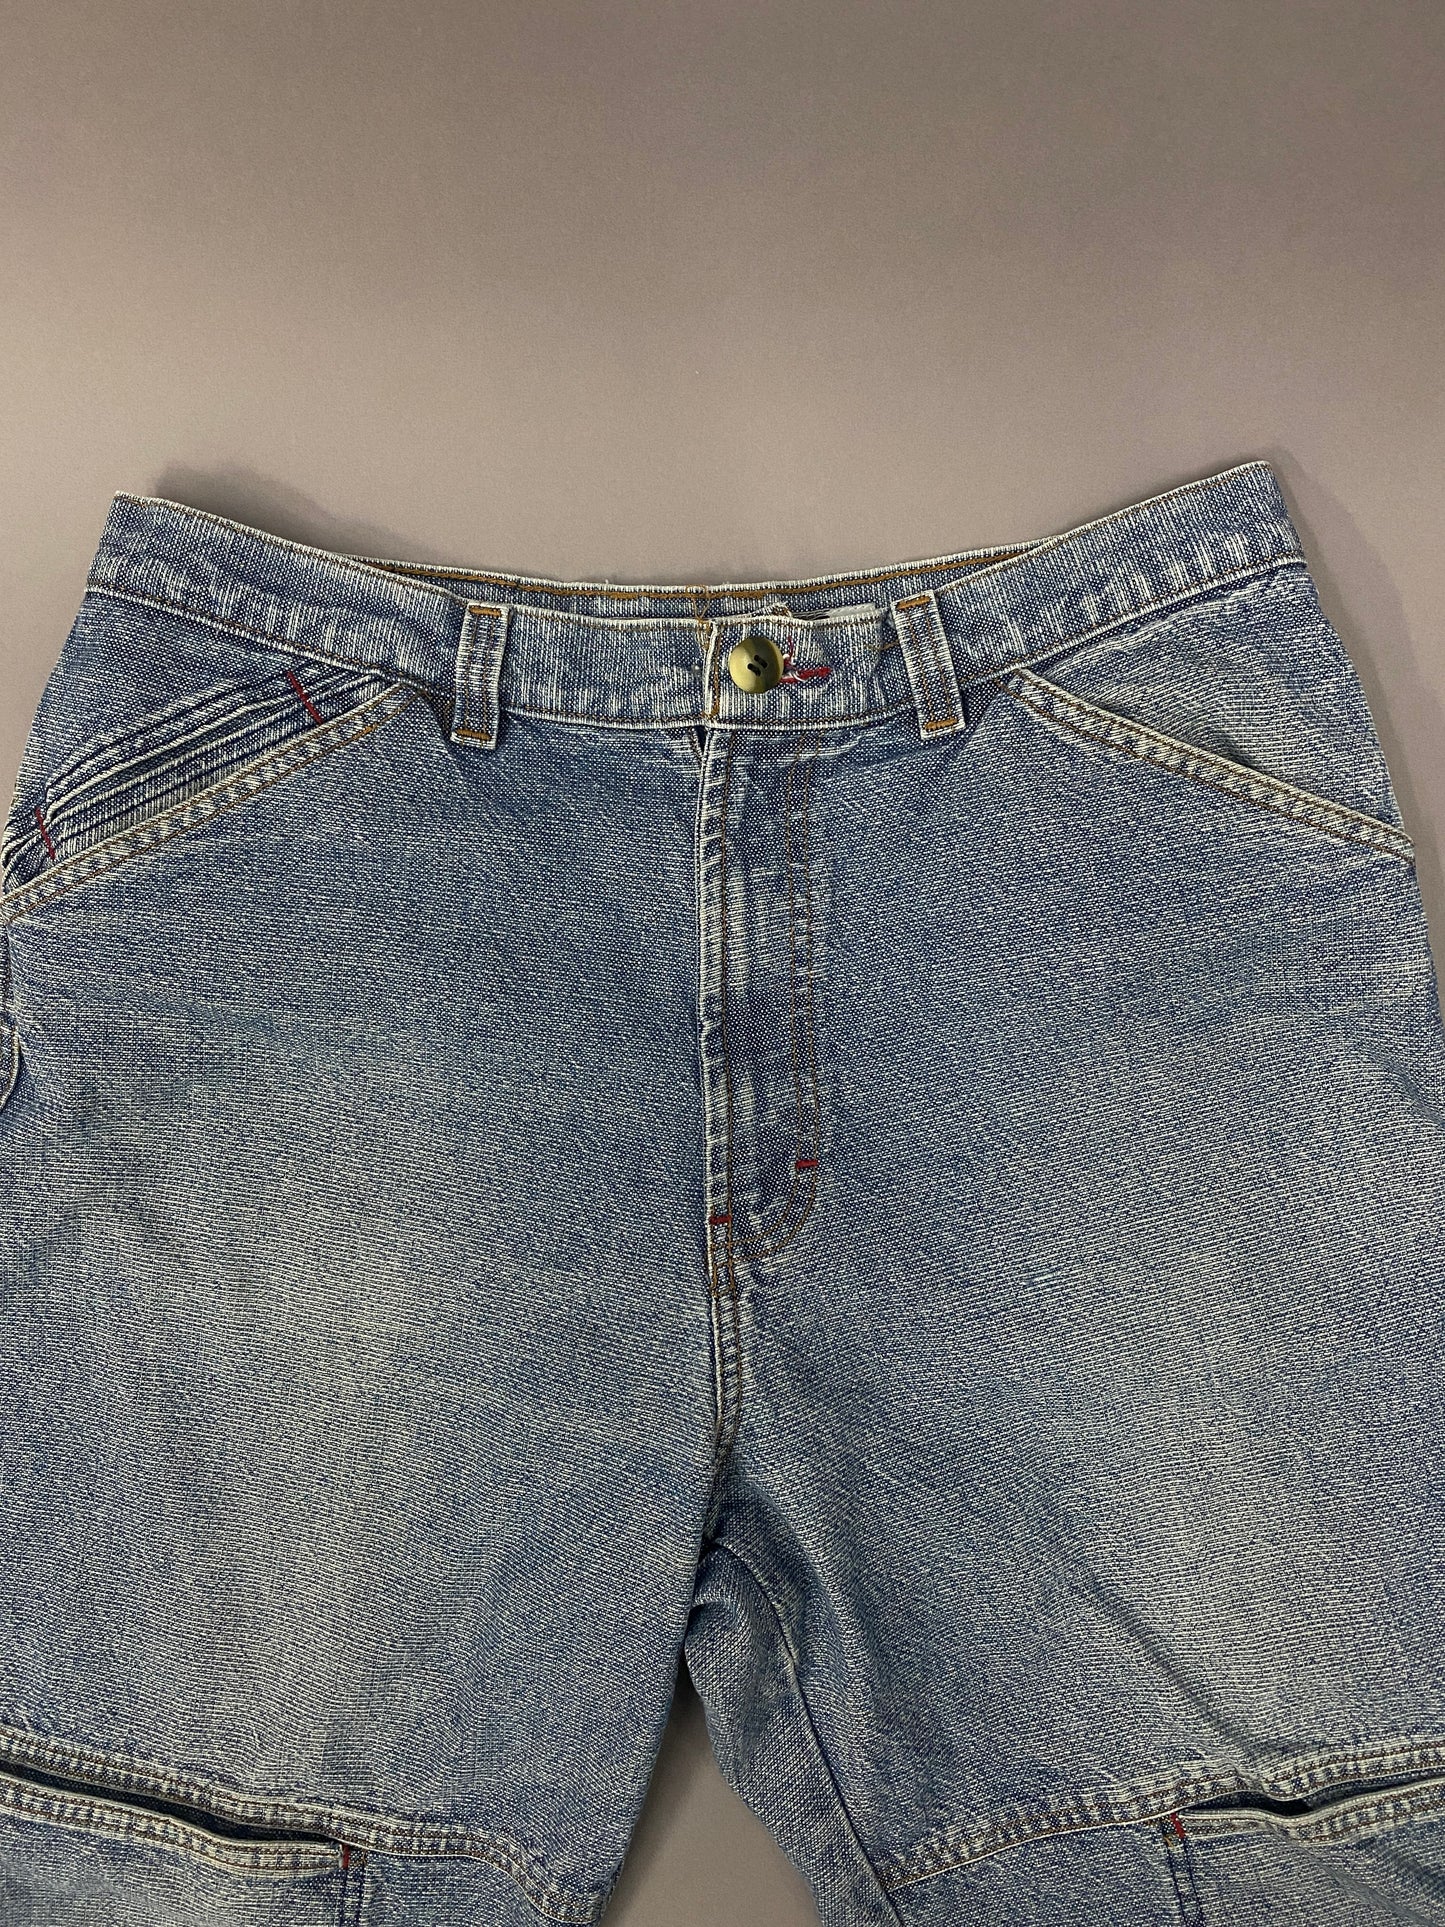 Vintage Raver Jeans - 33